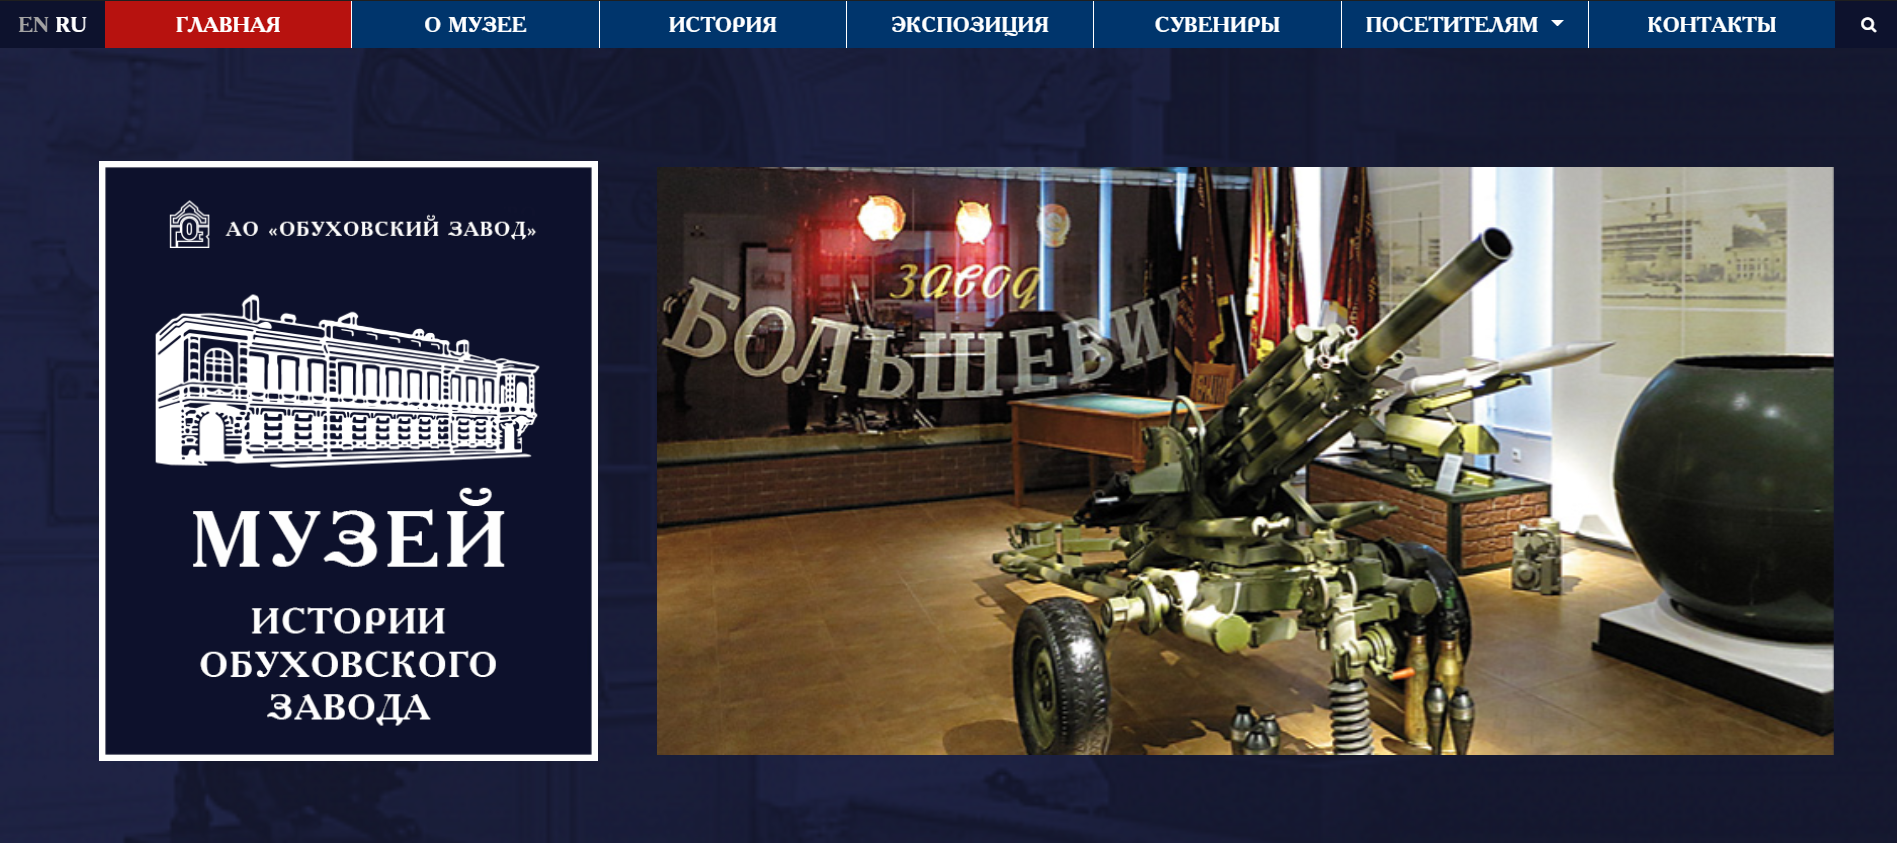 официальный сайт музея обуховского завода